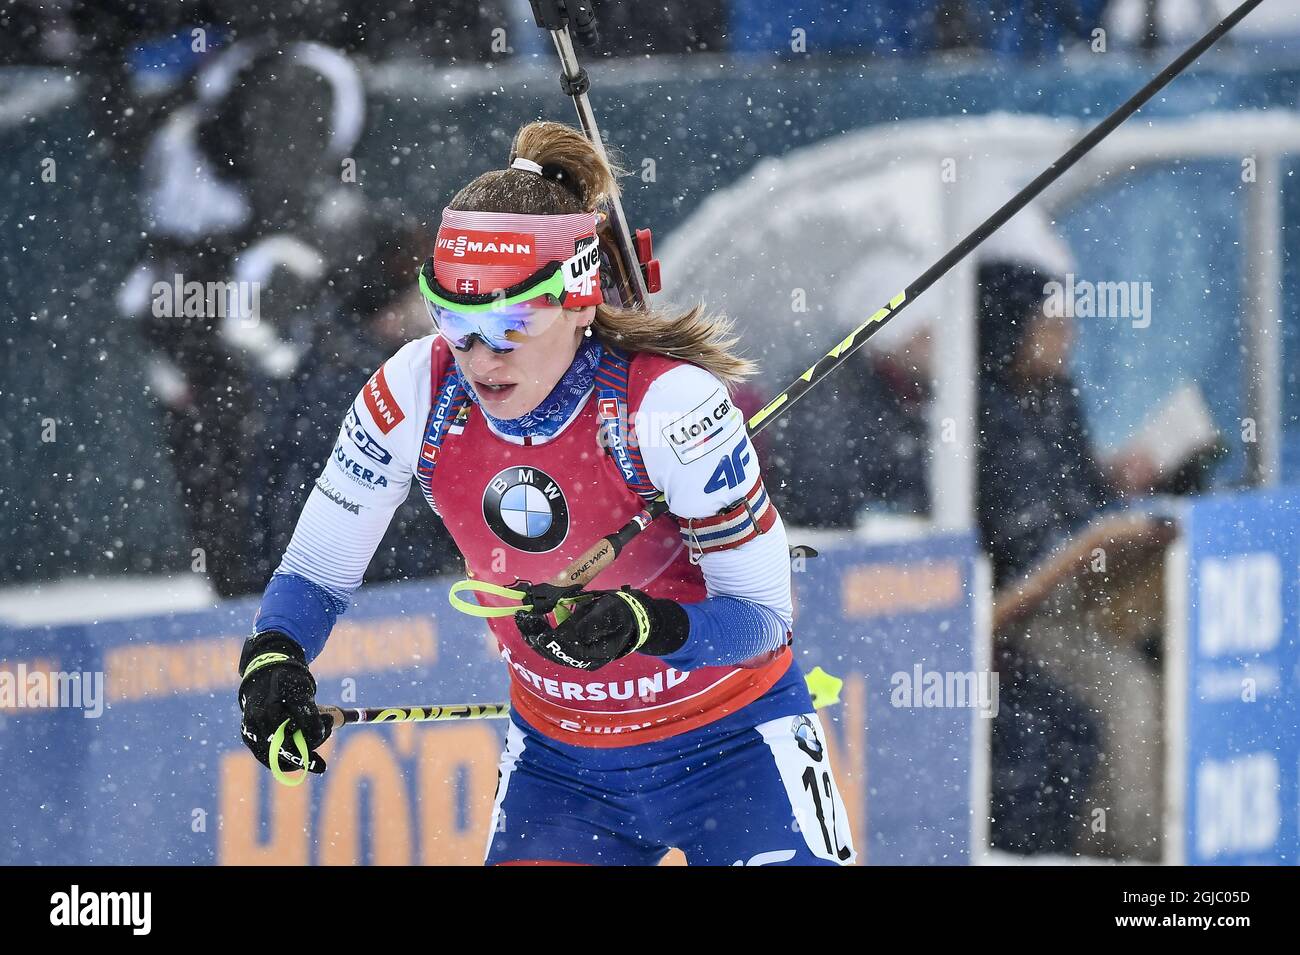 Paulina Fialkova aus der Slowakei tritt am 17. März 2019 beim  12,5-km-Massenstart der Frauen bei den IBU-Biathlon-Weltmeisterschaften in  Oestersund, Schweden, an. Foto: Robert Henriksson / TT / Code 11393  Stockfotografie - Alamy